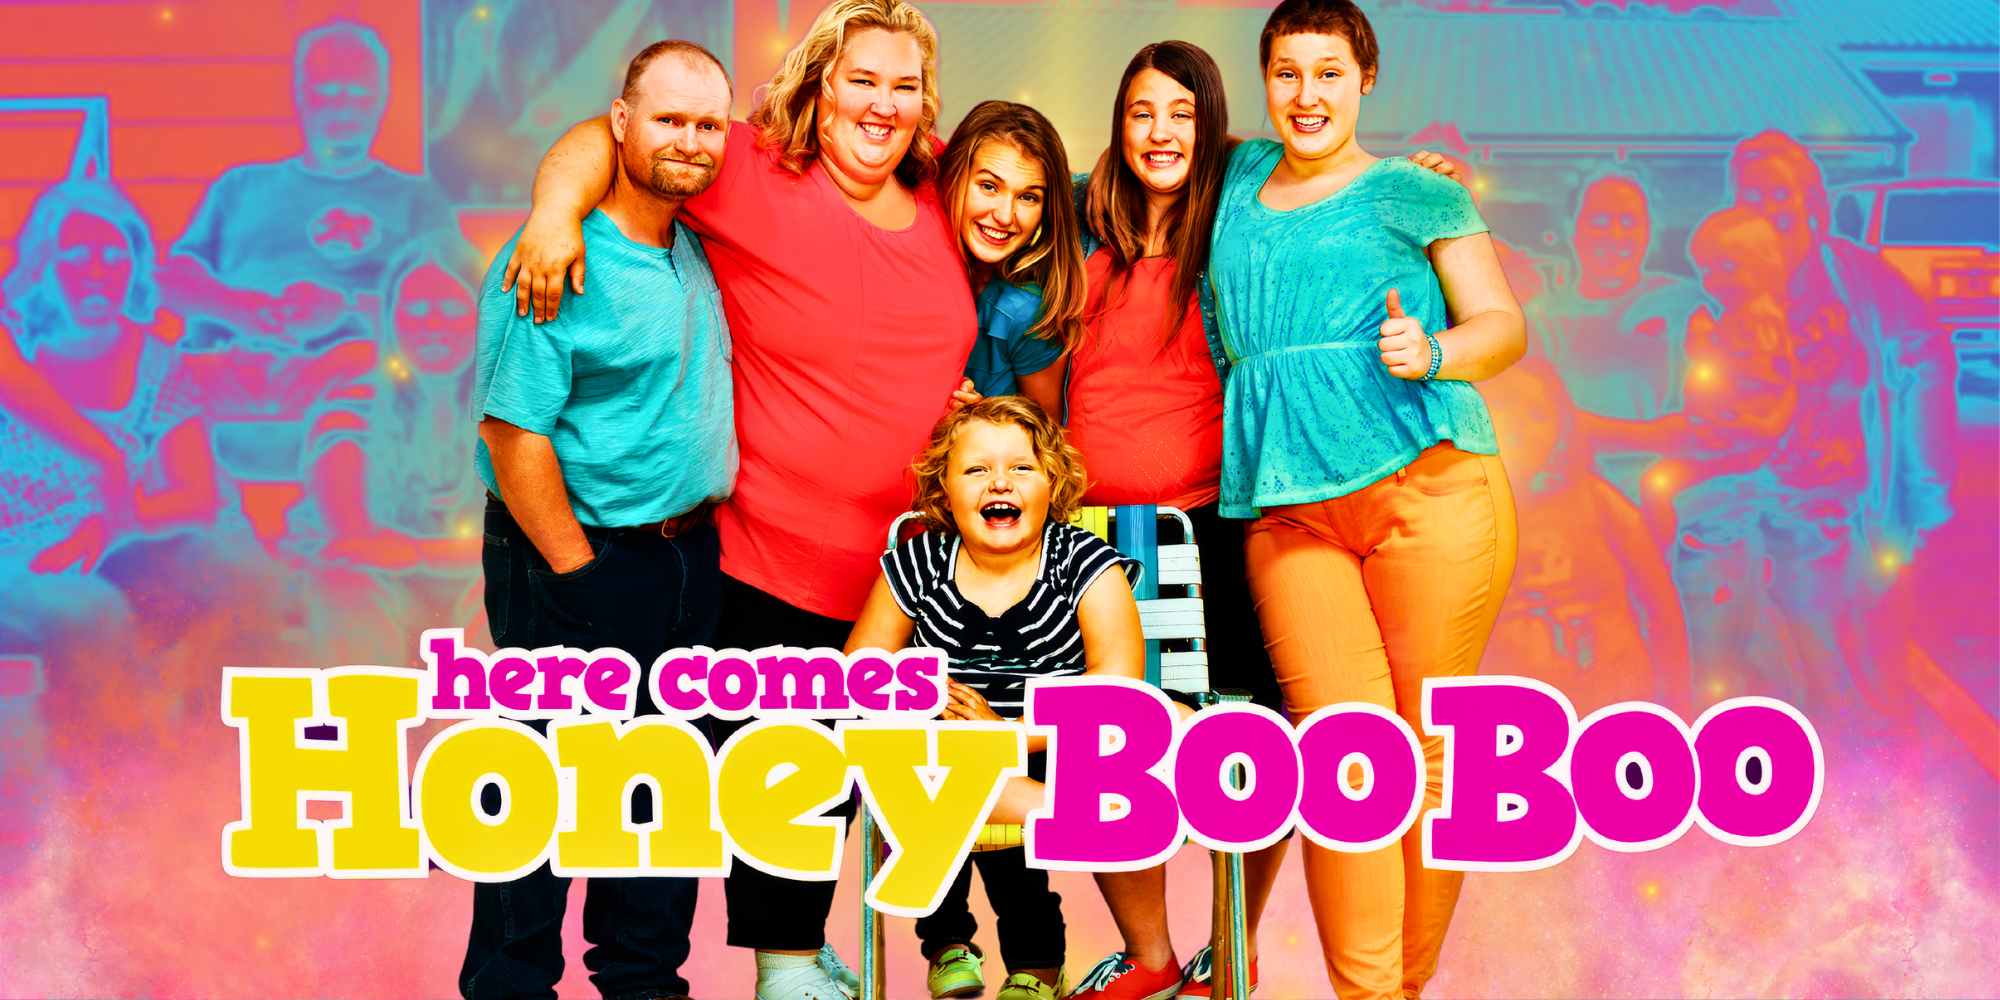 Aquí viene el elenco de Honey Boo Boo: ¿Dónde están ahora?